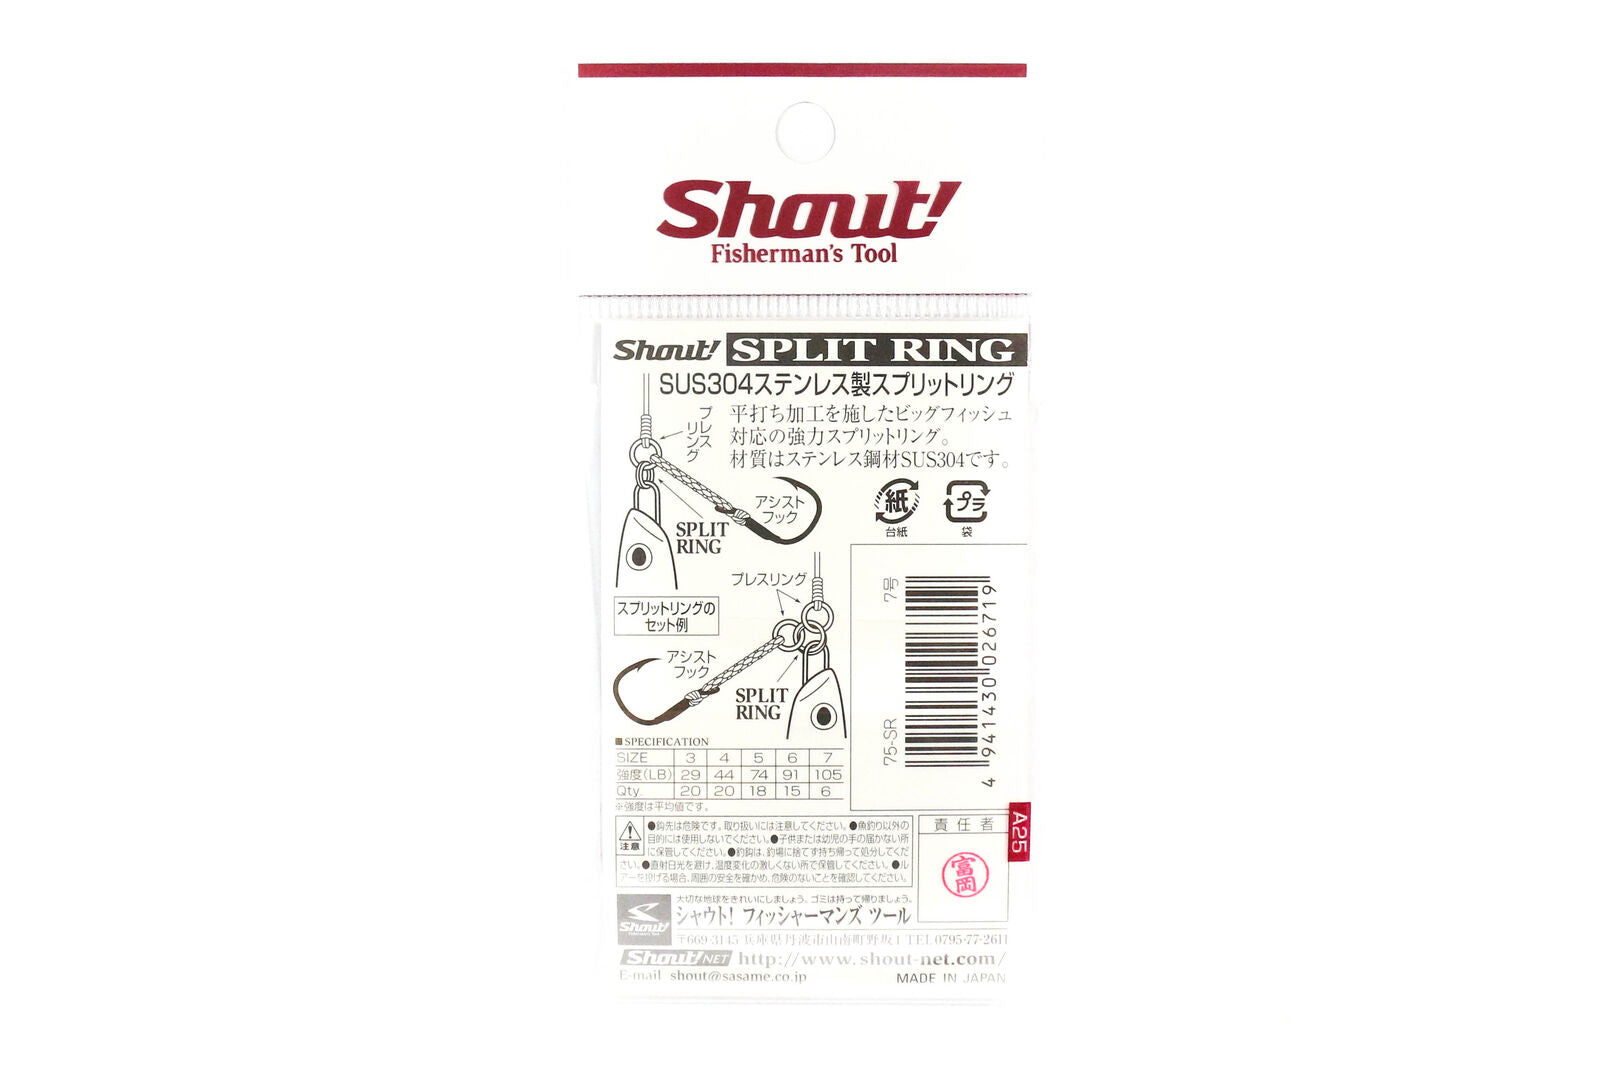 Shout 75-SR Split Ring  Stainless Steel split ring back of pack image